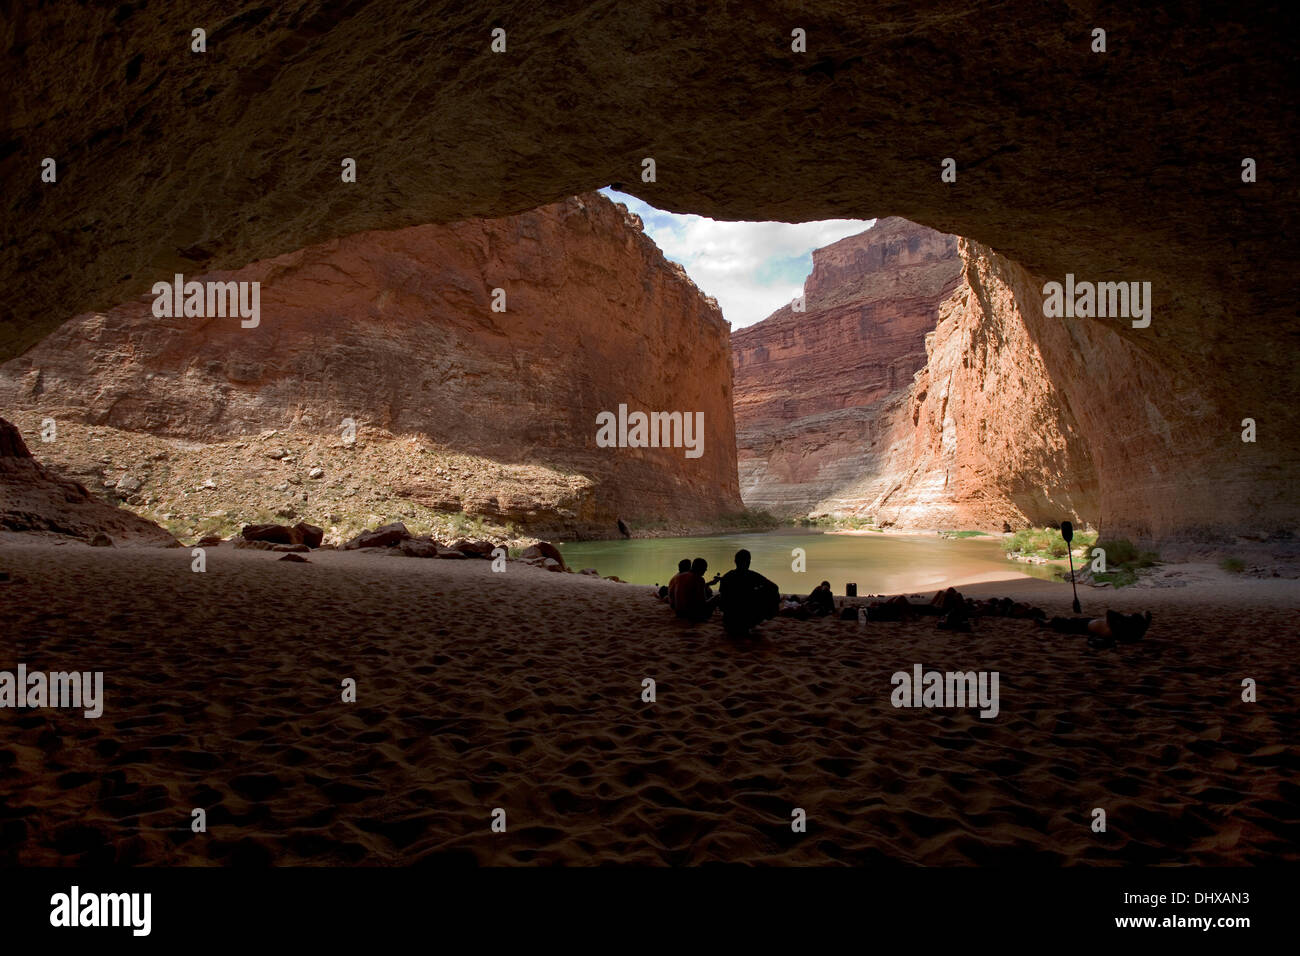 Un groupe de chevrons se détend et joue à l'intérieur de la Caverne guitares Redwall dans le Grand Canyon, Arizona, USA Banque D'Images